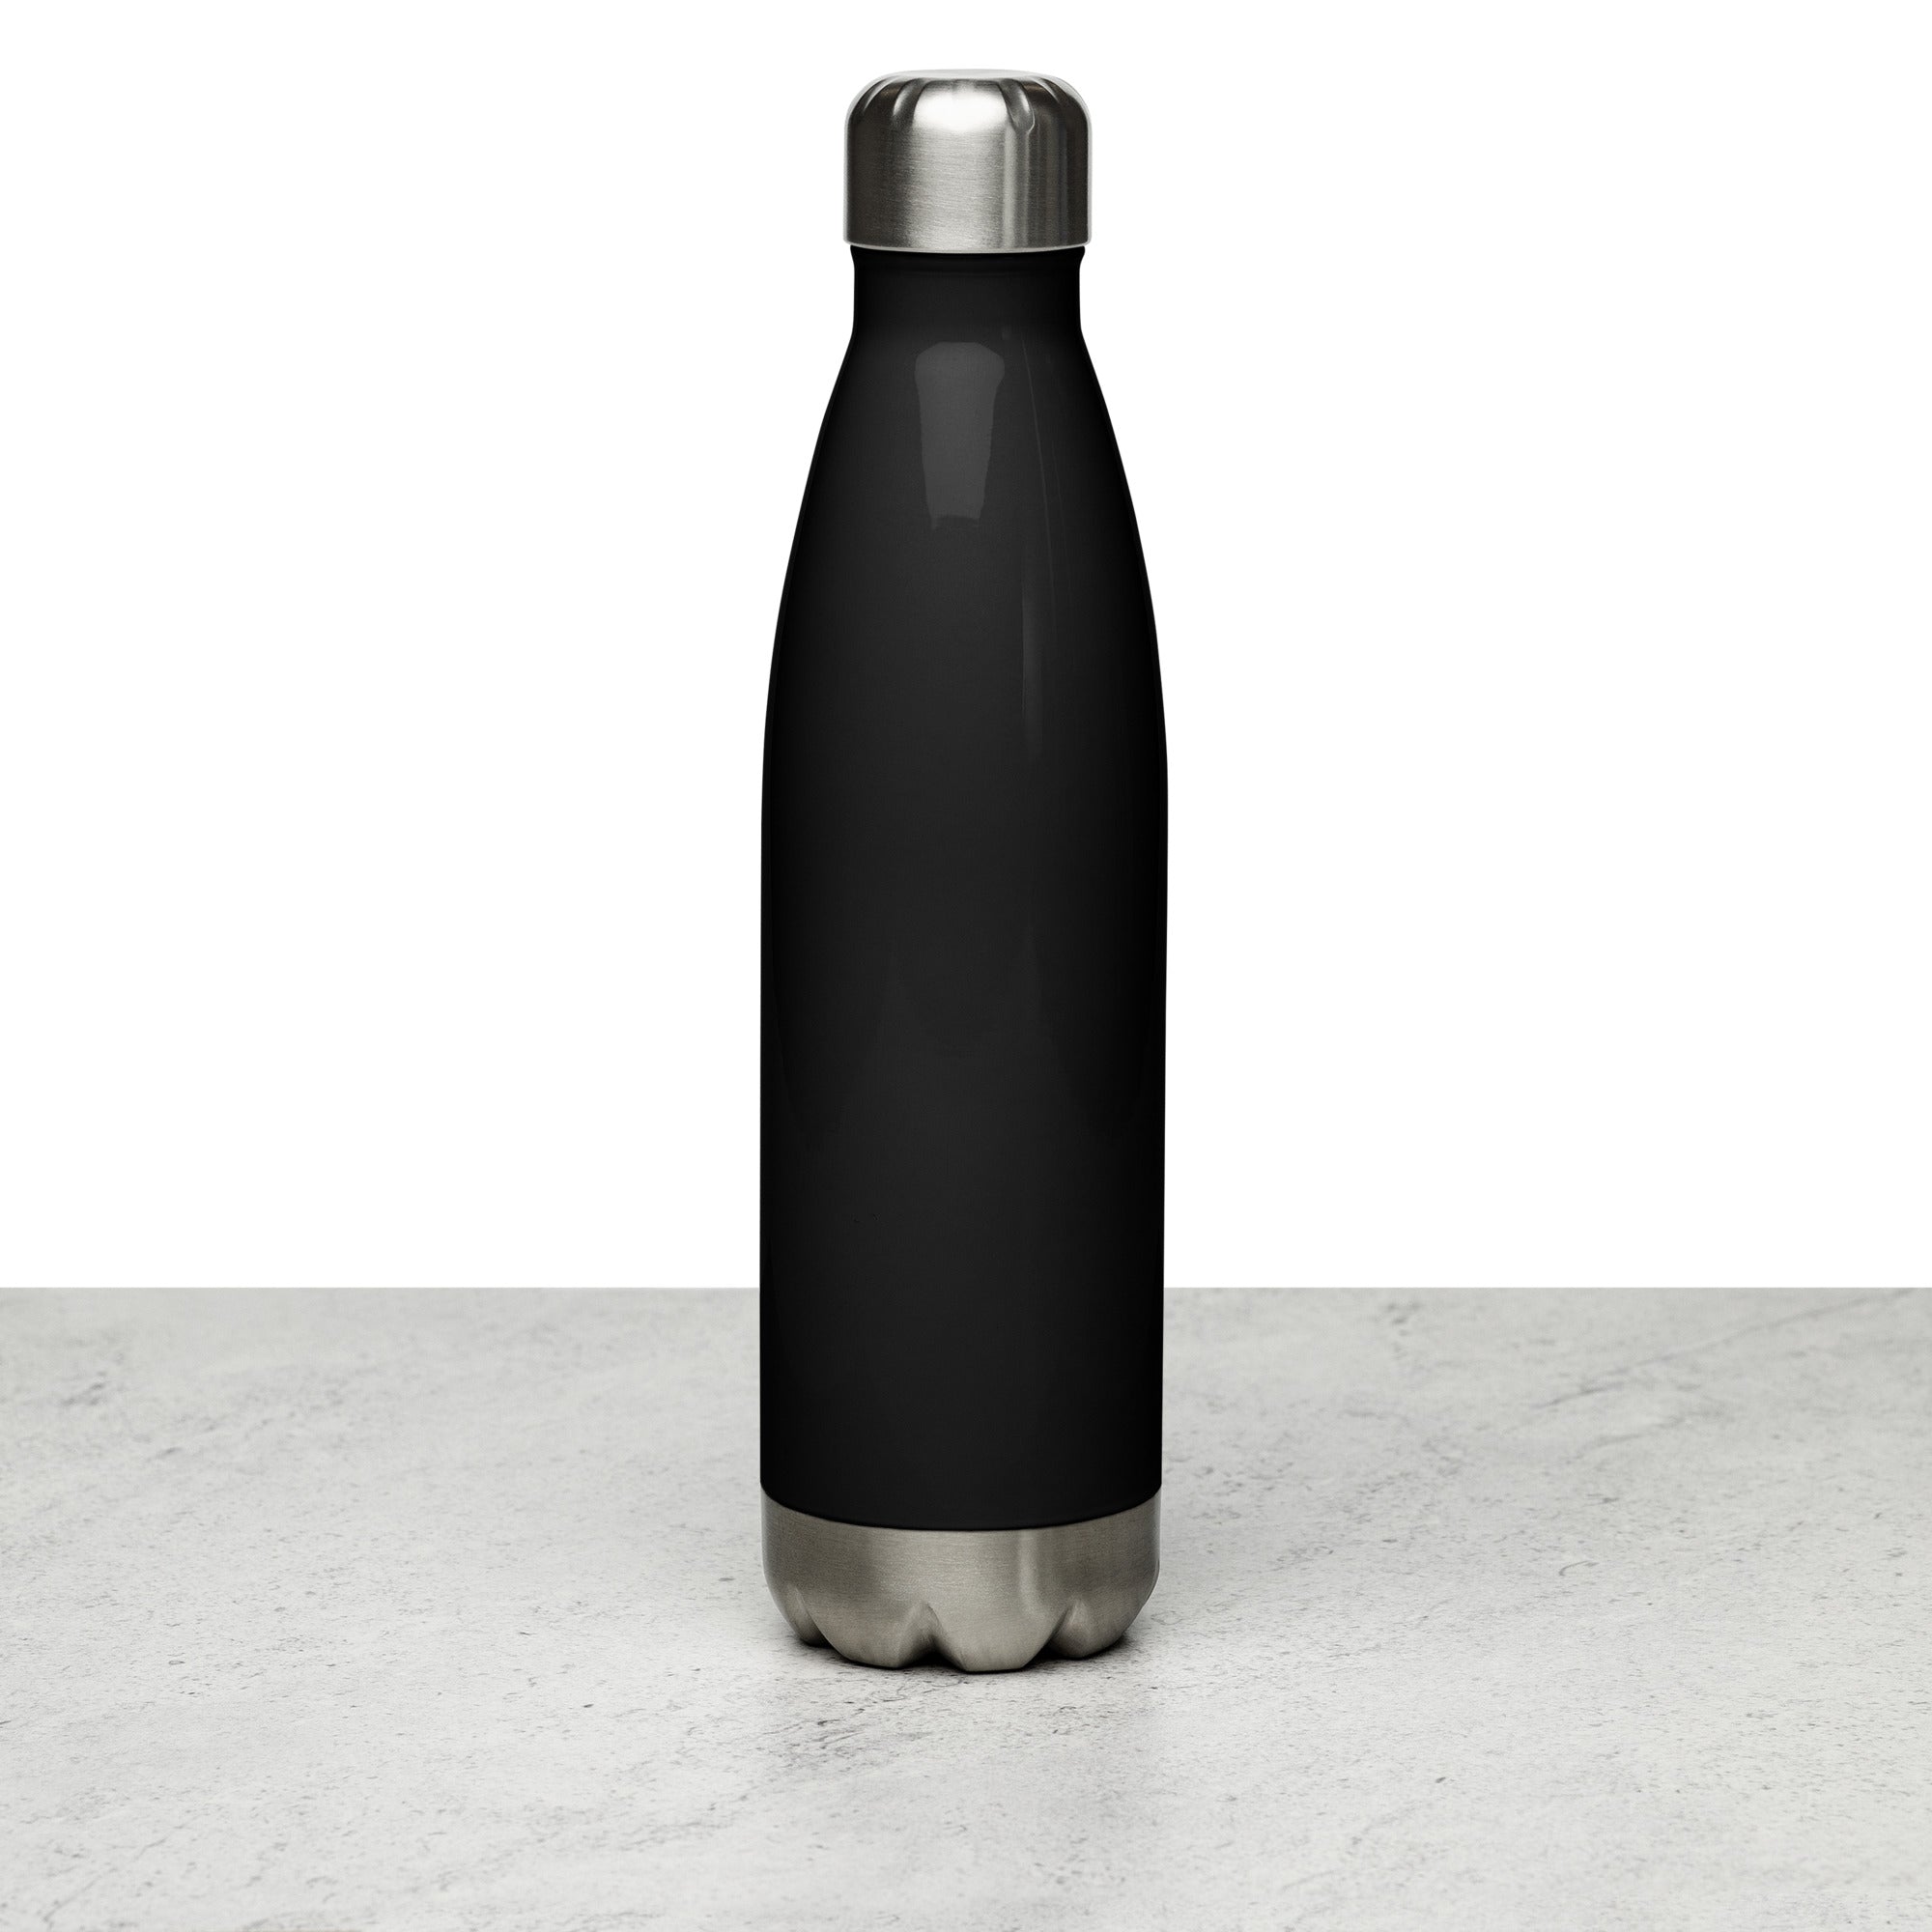 Stainless Steel Water Bottle | FATHOMWERX